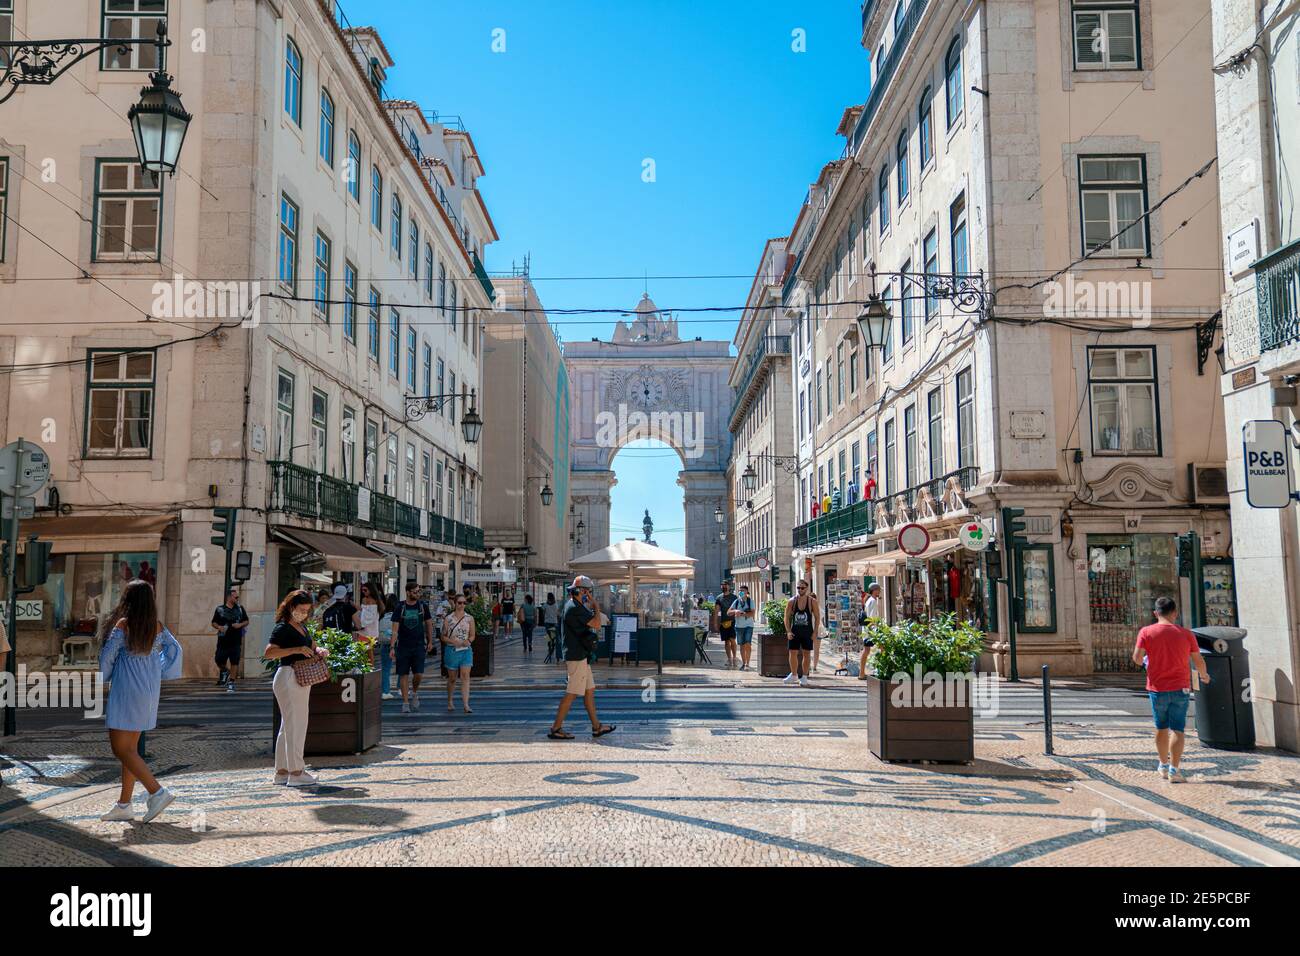 Lisbon - Portugal, August 2020: Elegant Travel destination, city unique architecture in antique european style. Stock Photo